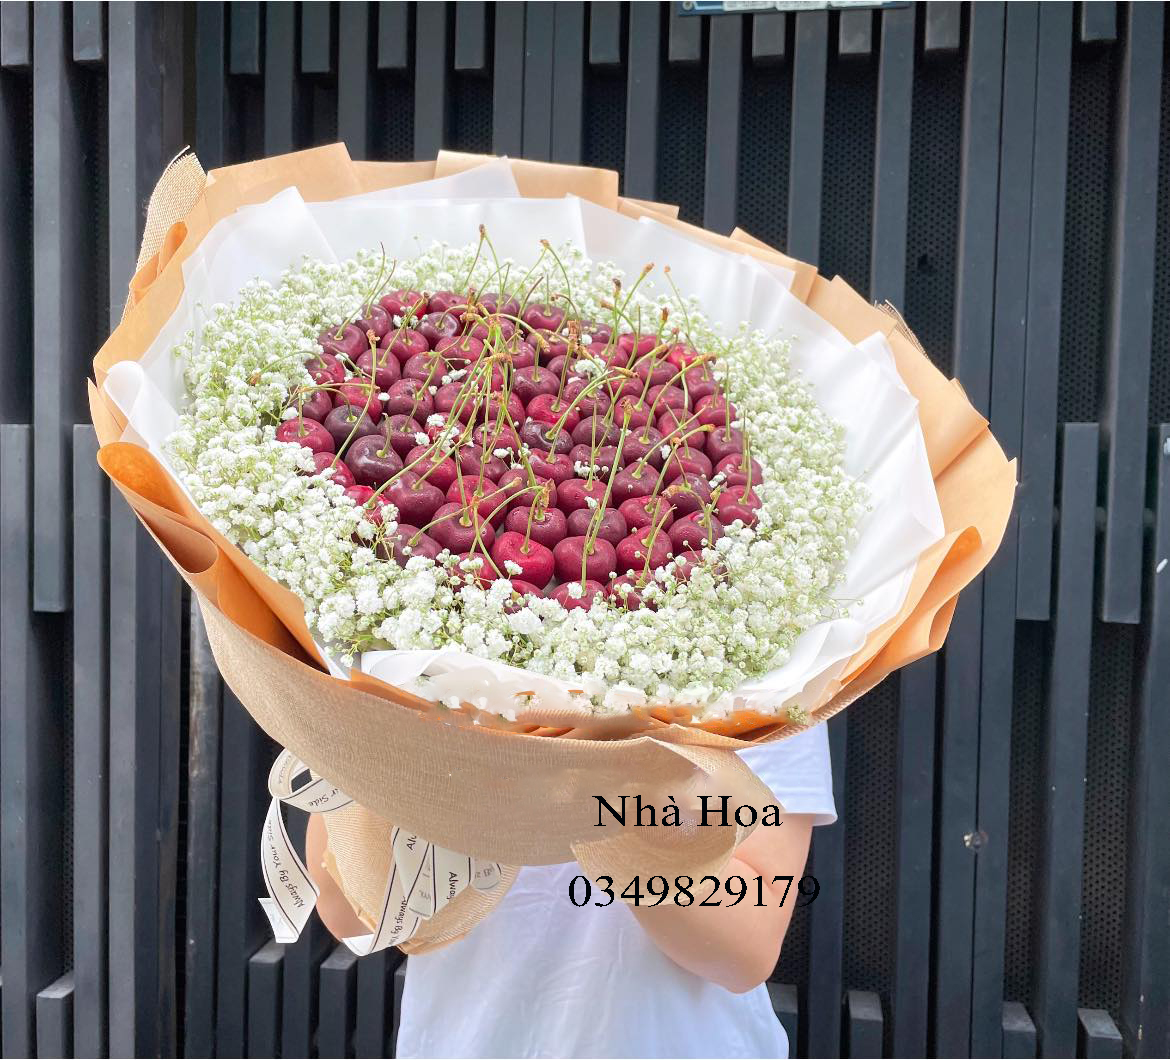 Shop hoa tươi quận Hóc Môn giá rẻ đẹp và chất lượng tại Hồ Chí Minh